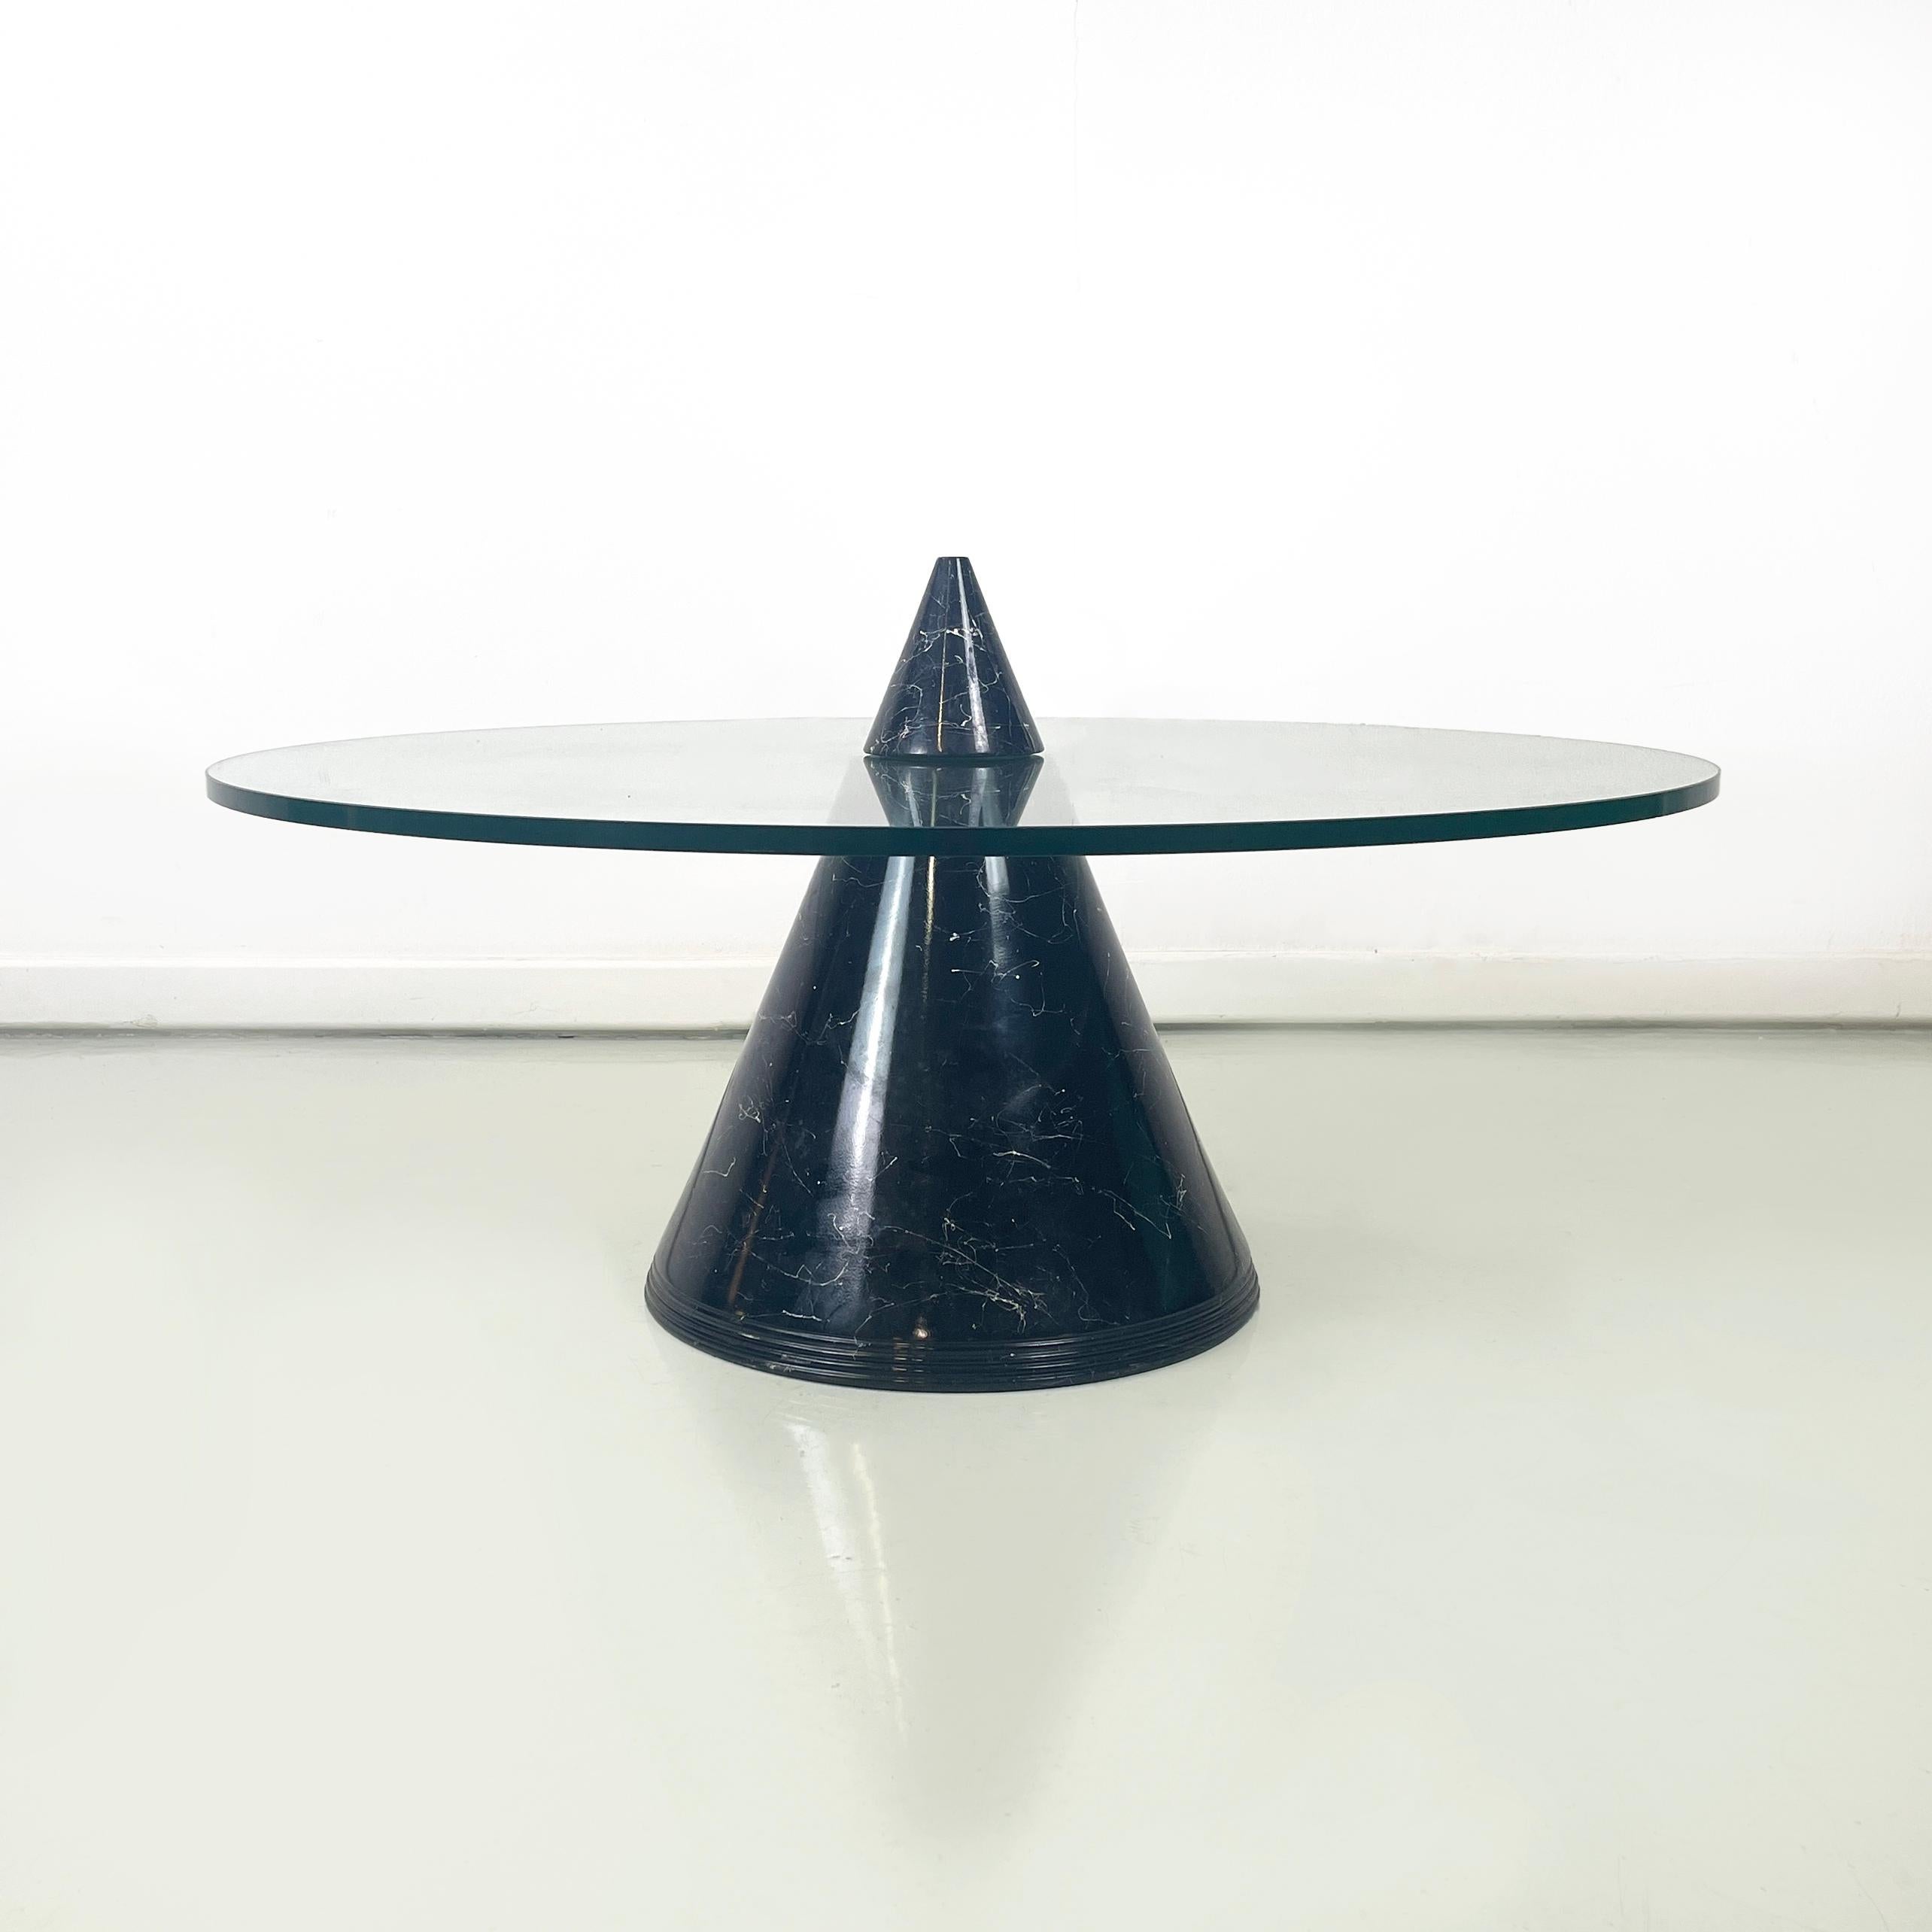 Italienische Moderne Runder Couchtisch aus Glas mit konischem Sockel aus schwarzem Marmor, 1980er Jahre
Couchtisch mit dicker runder Glasplatte. Der konische Bau, der durch die Spitze in zwei Hälften geteilt wird, ist mit schwarzem Marmor